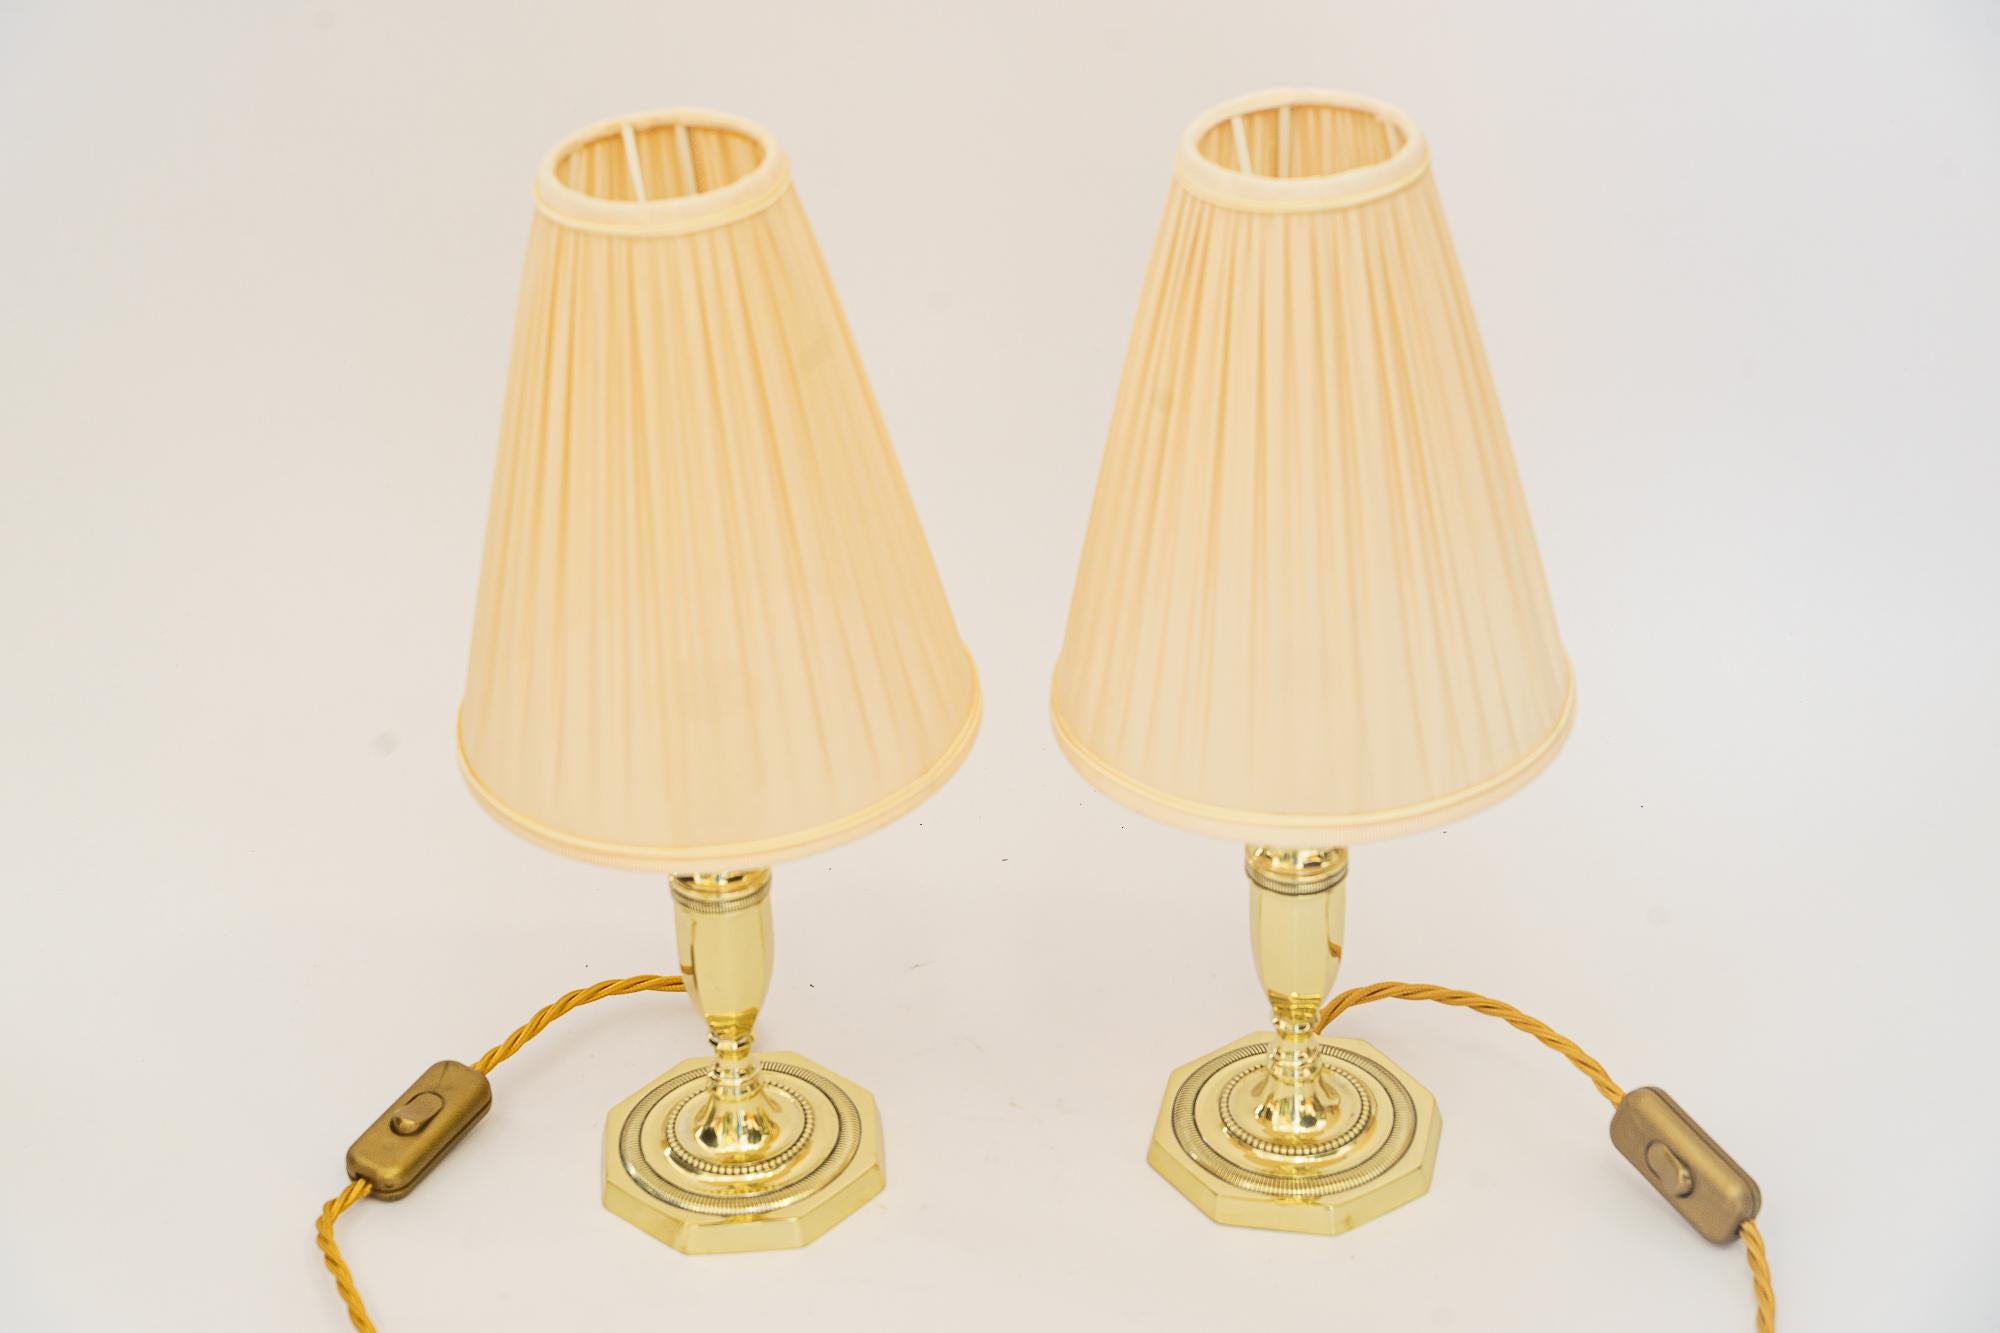 2 Art Deco Tischlampen mit Stoffschirmen Wien um 1920er Jahre
Poliert und emailliert
Die Stoffschirme werden ersetzt ( neu )